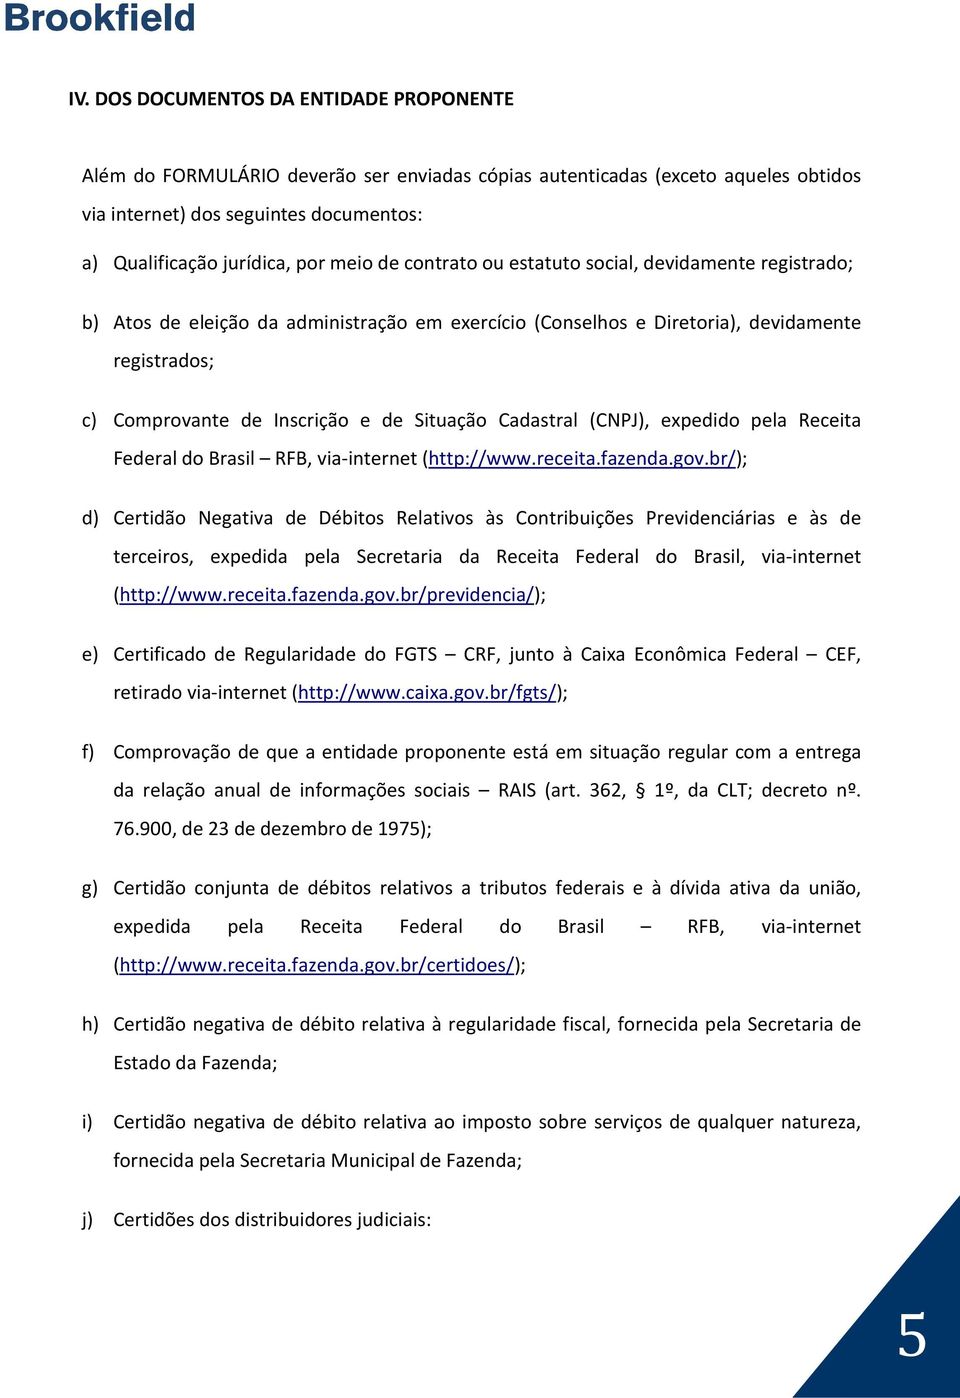 Situação Cadastral (CNPJ), expedido pela Receita Federal do Brasil RFB, via-internet (http://www.receita.fazenda.gov.